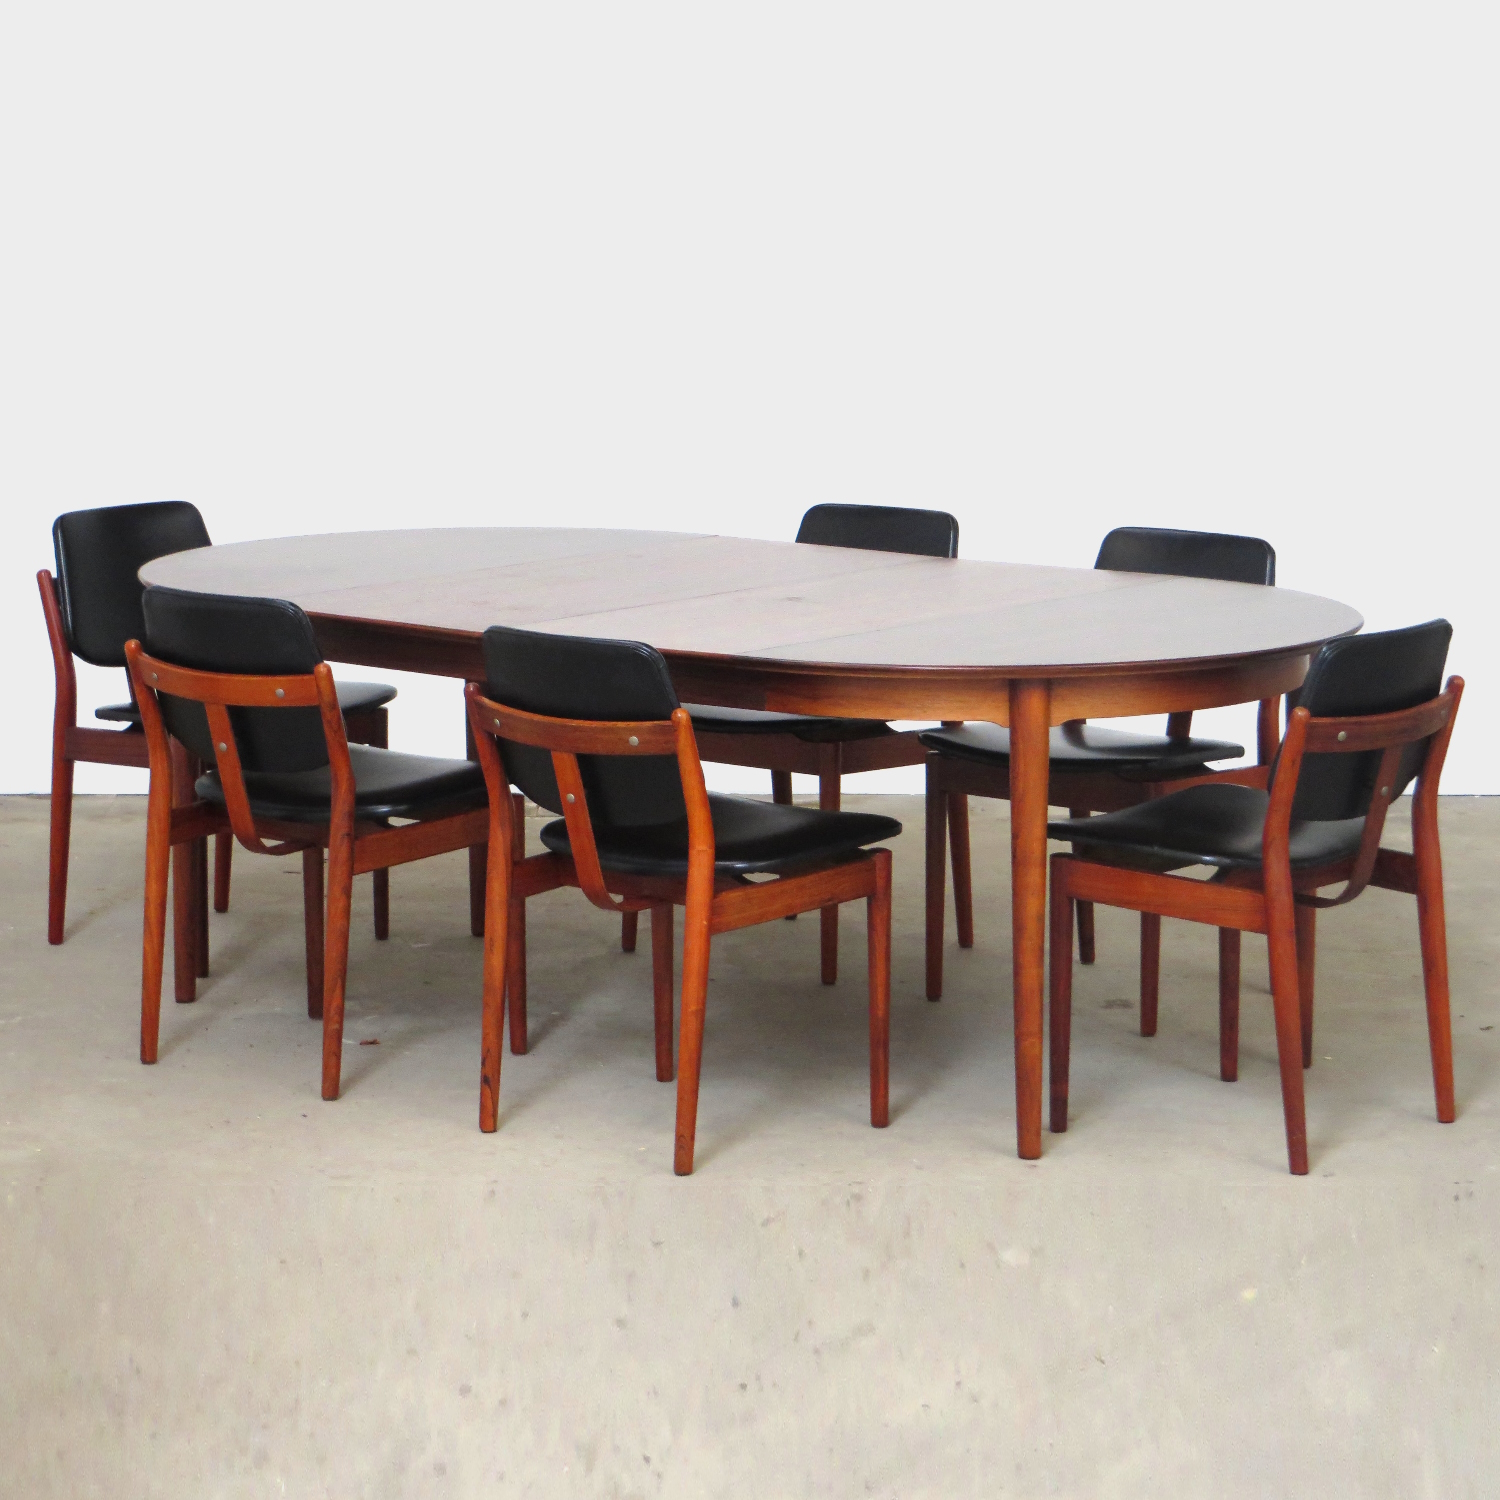 Foto van de zijkant van de tafel en zes stoelen